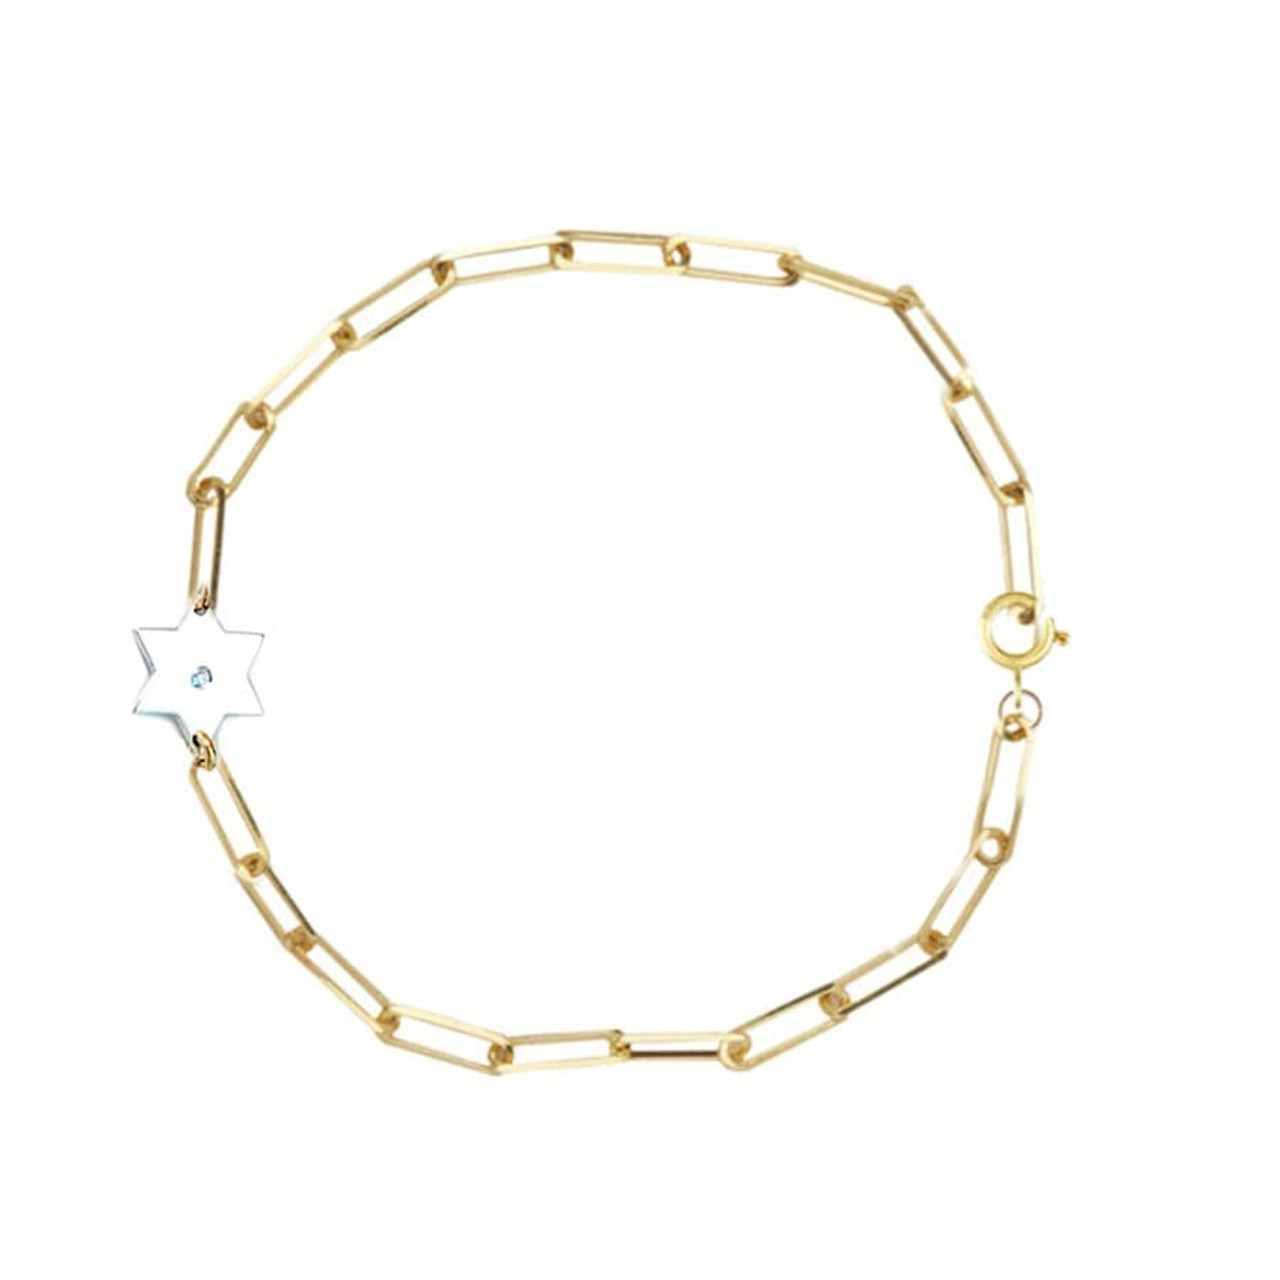 Star of David Sparkle Bracelet - Gold, Silver or Rose Gold